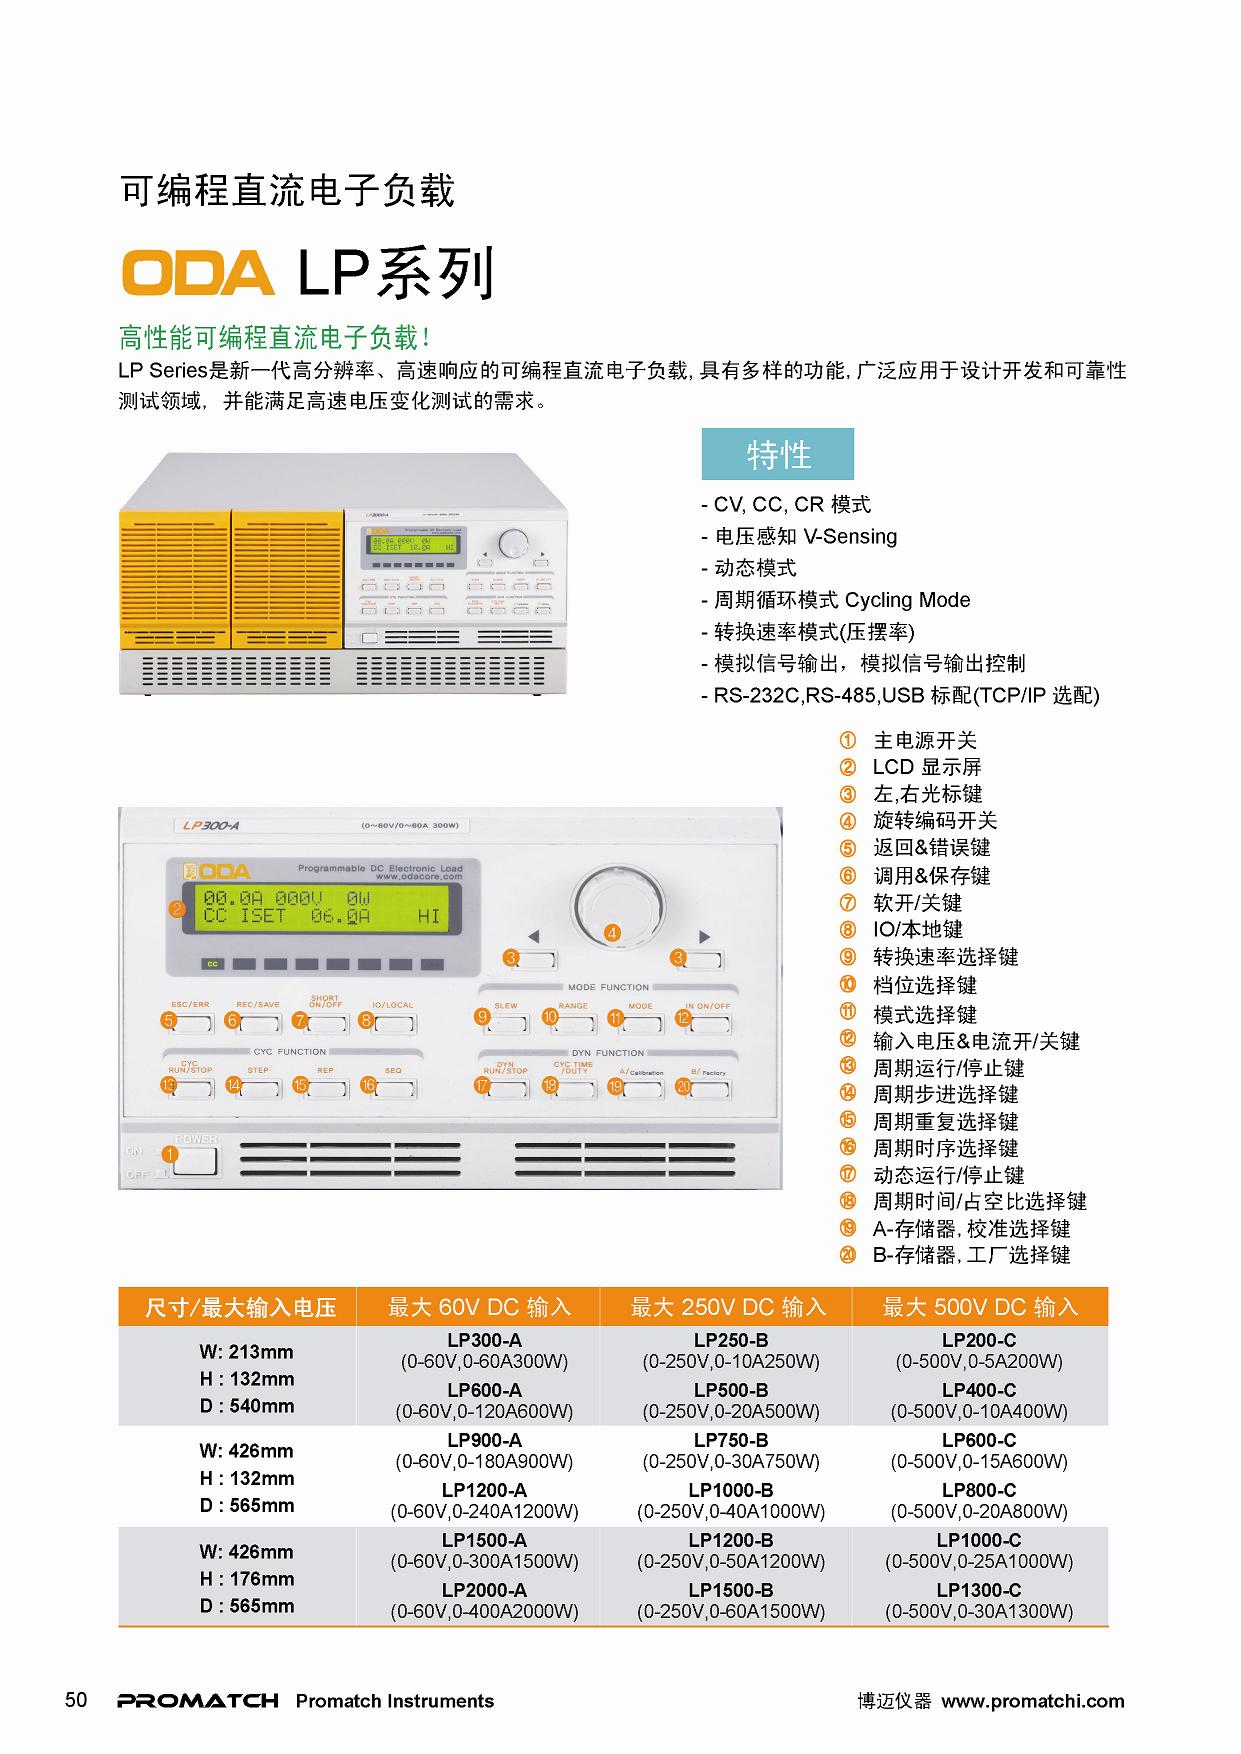 韩国ODA,进口,LP系列,直流电子负载,LP300-A,LP600-A,LP900-A,LP1200-A,LP1500-A,LP2000-A,LP250-B,LP500-B,LP750-B,LP1000-B,LP1200-B,LP1500-B,LP200-C,LP400-C,LP600-C,LP800-C,LP1000-C,LP1300-C